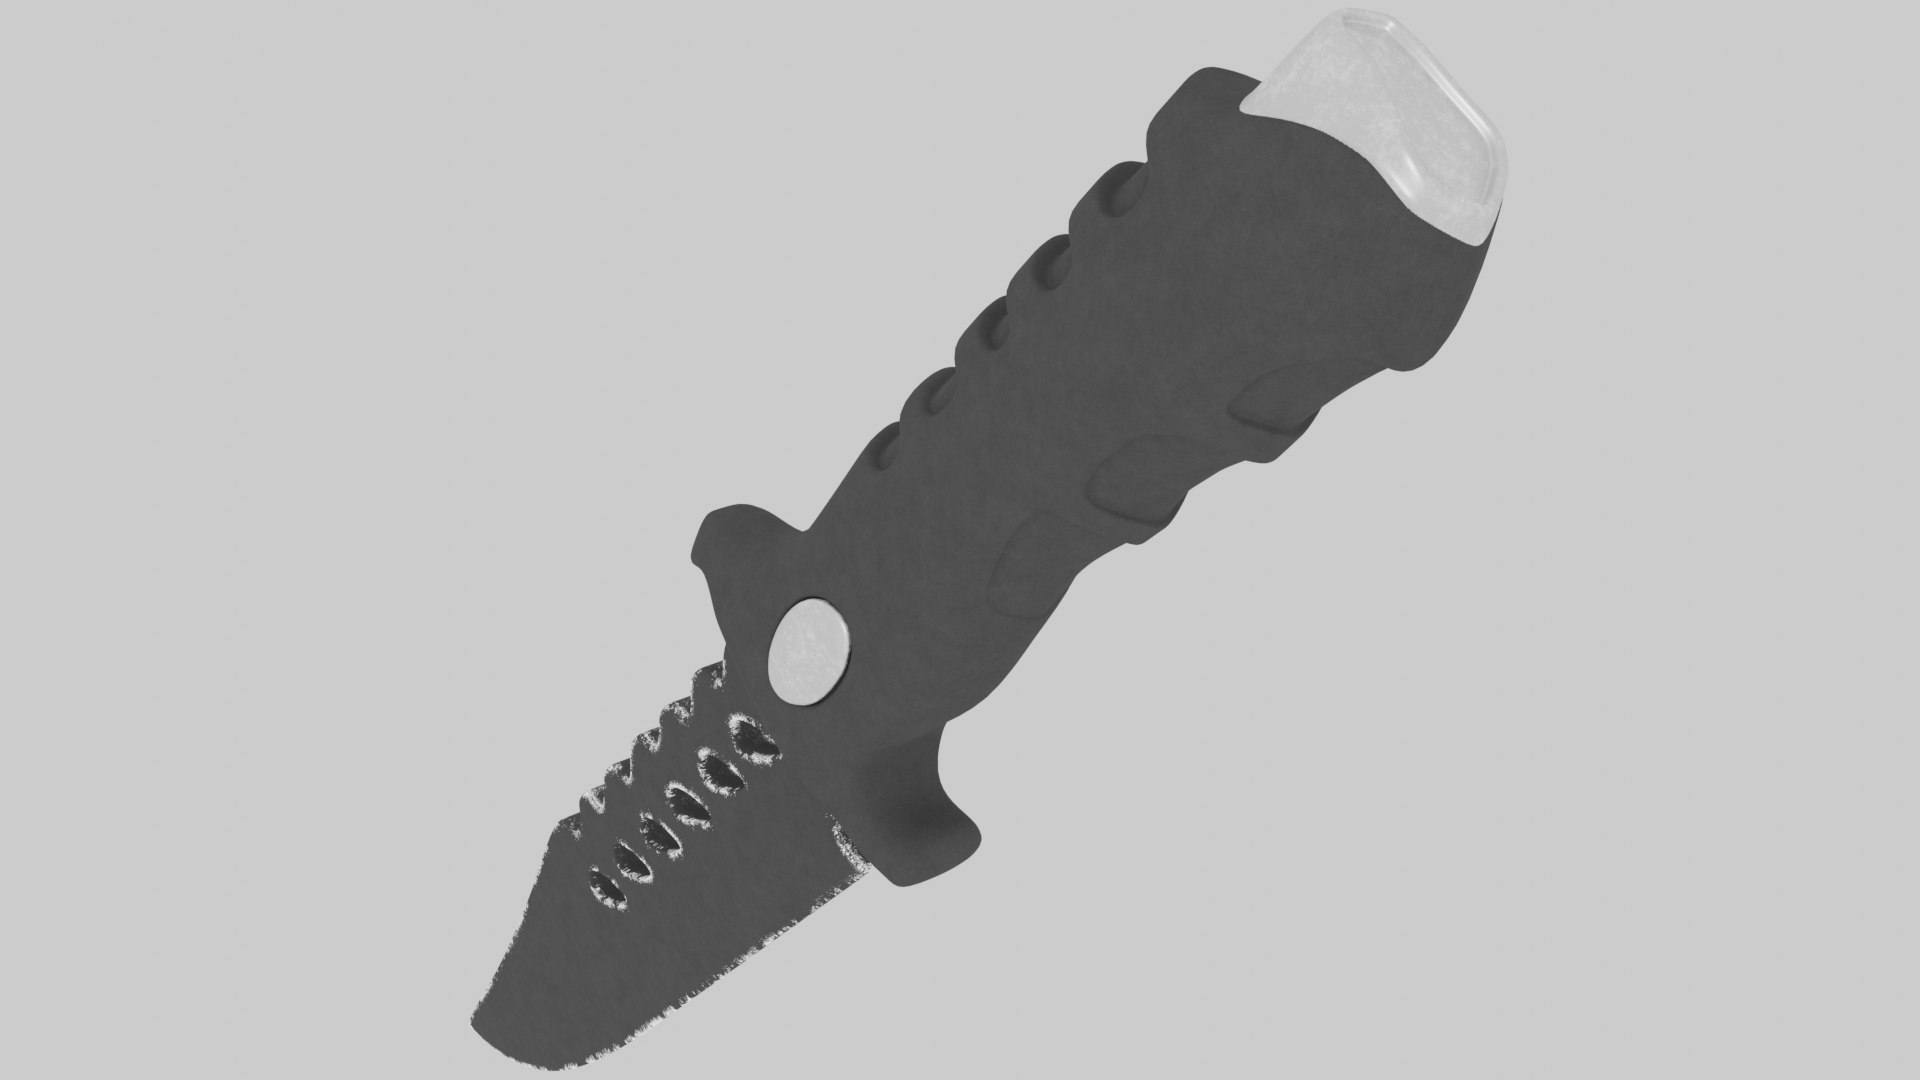 knife hunt 3D model https://p.turbosquid.com/ts-thumb/Zg/tx43pn/Bs/knife_sub_1.2/png/1605216009/1920x1080/fit_q87/c487527a5fd7e47e68755eb7151a8b0dac2b2662/knife_sub_1.2.jpg